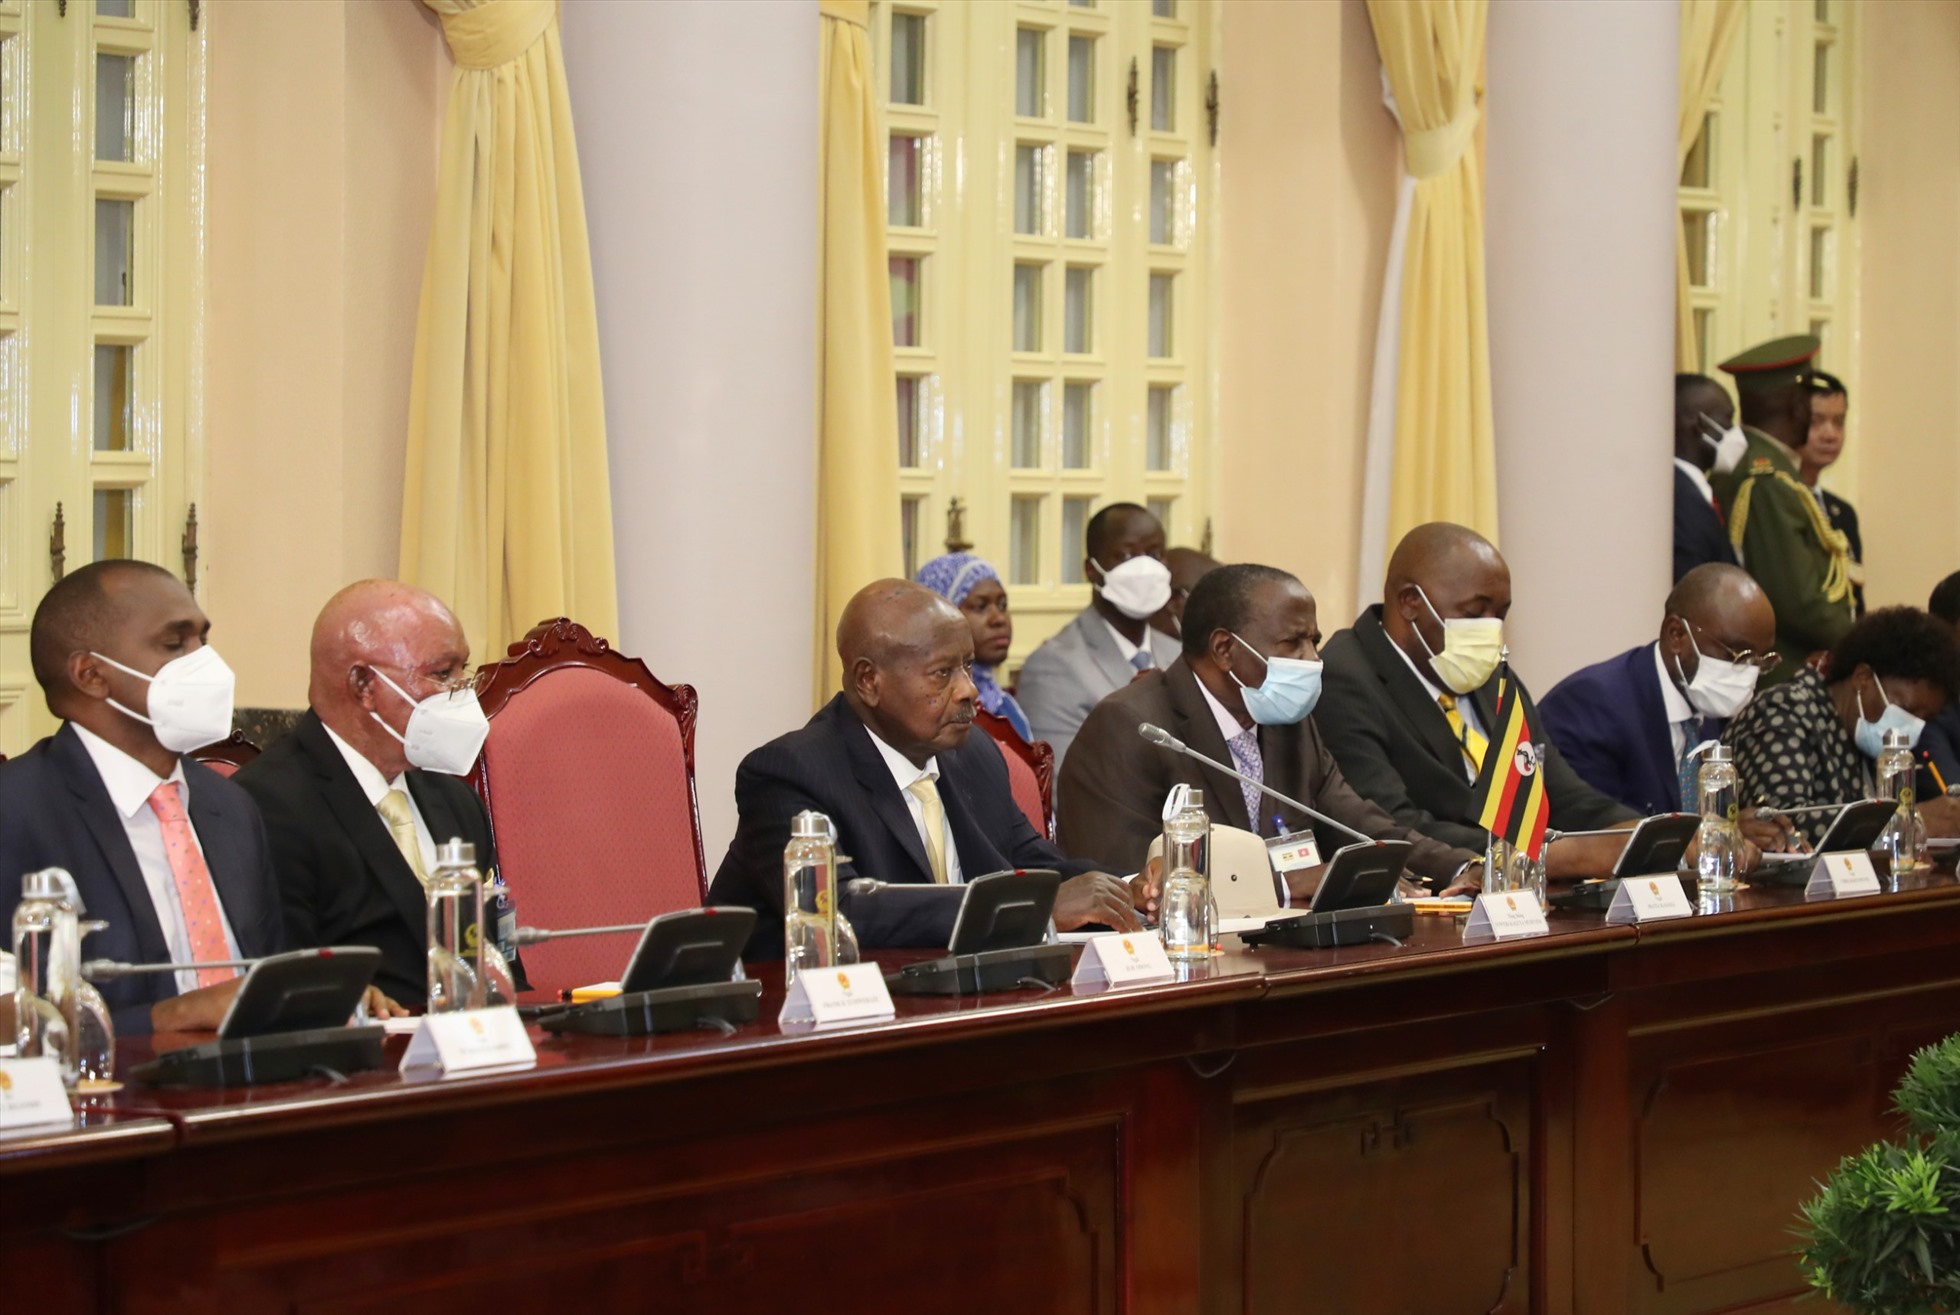 Chuyến thăm chính thức Việt Nam của Tổng thống Uganda Yoweri Kaguta Museveni diễn ra trong bối cảnh các nước Châu Phi, trong đó có Uganda coi trọng thiết lập và phát triển quan hệ hợp tác với các nước trong khu vực Châu Á-Thái Bình Dương, bao gồm Việt Nam. Ảnh: Hải Nguyễn